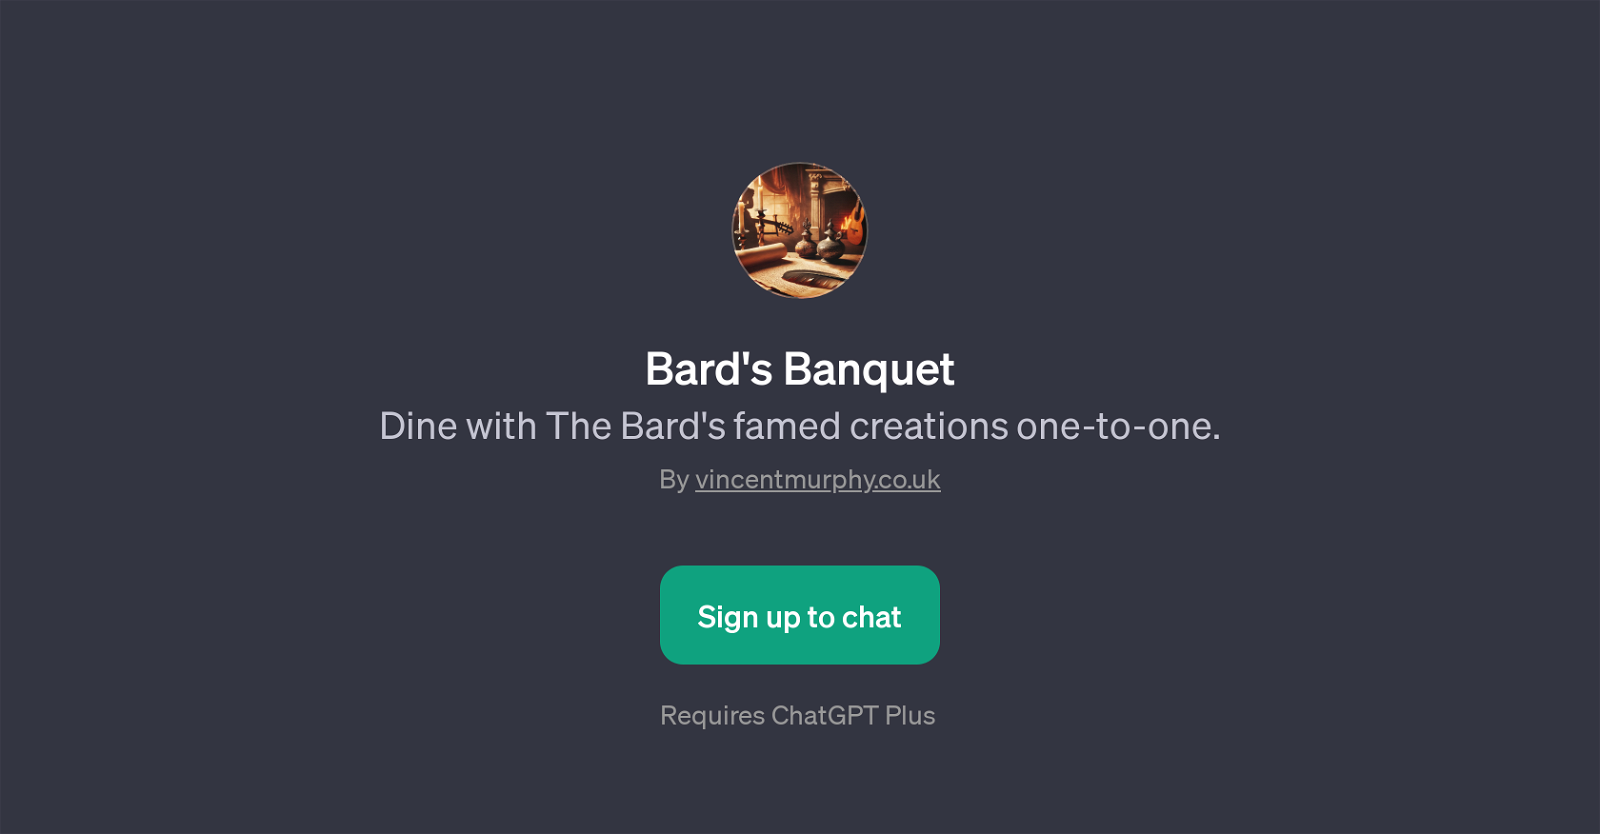 Bard's Banquet website